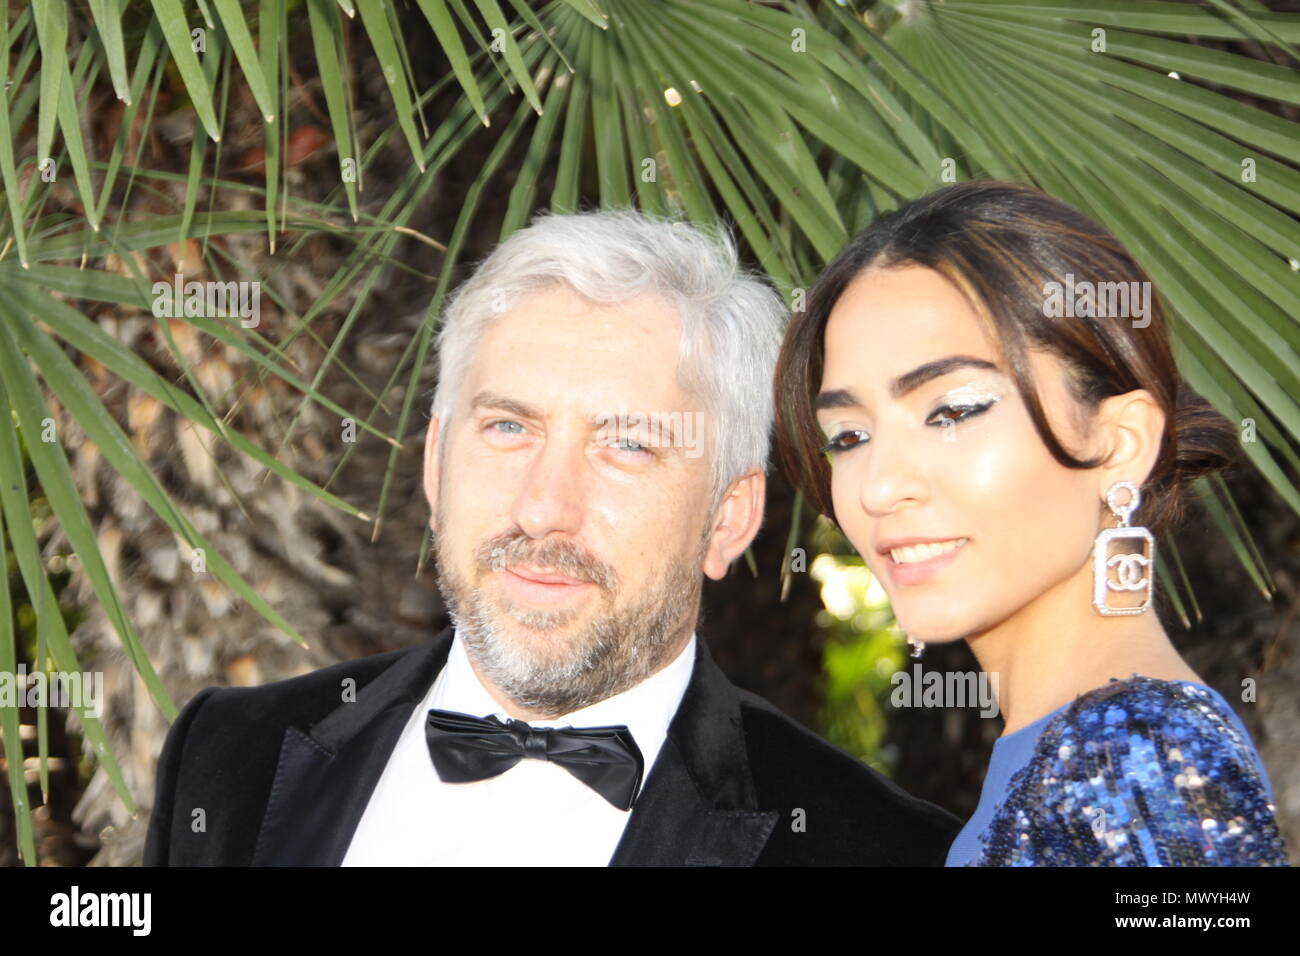 CANNES, Francia - 19 de mayo de 2018: Vadim Blaustein y modelo brasileña Jessica Samea asistir a la ceremonia de clausura del Festival de Cine de Cannes de 2018. Foto de stock